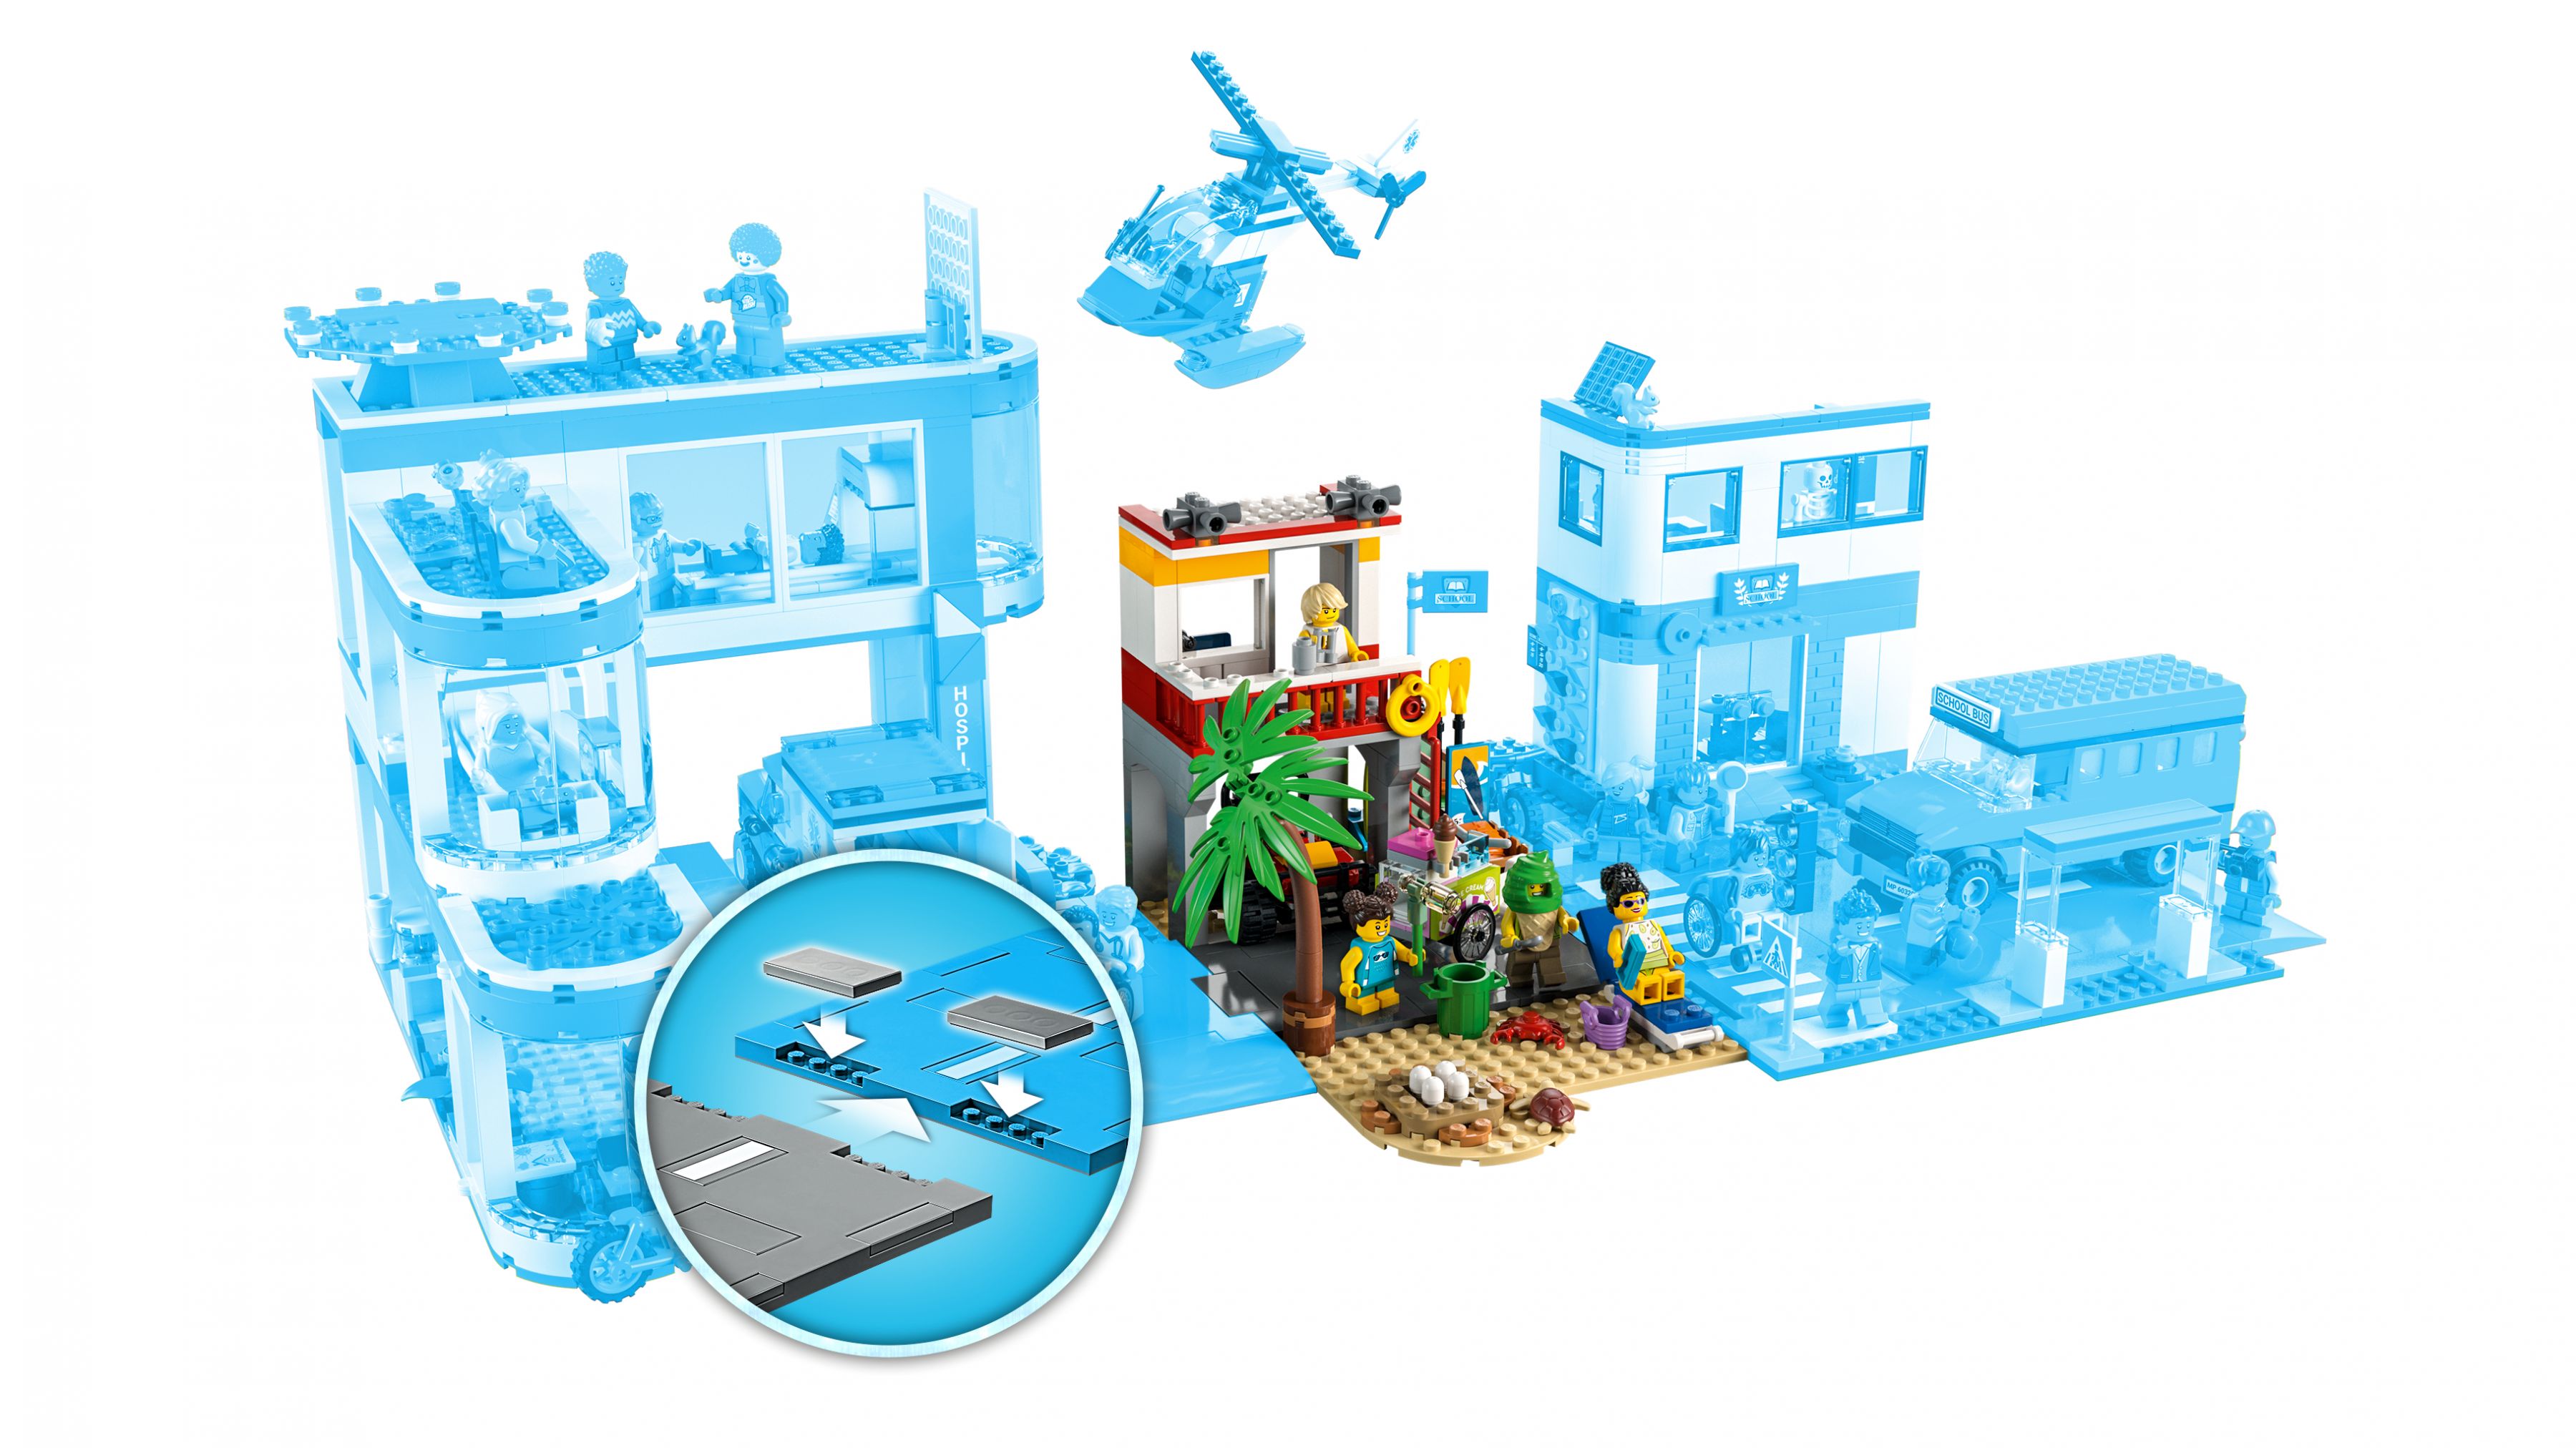 LEGO City 60328 Rettungsschwimmer-Station LEGO_60328_WEB_SEC03_NOBG.jpg